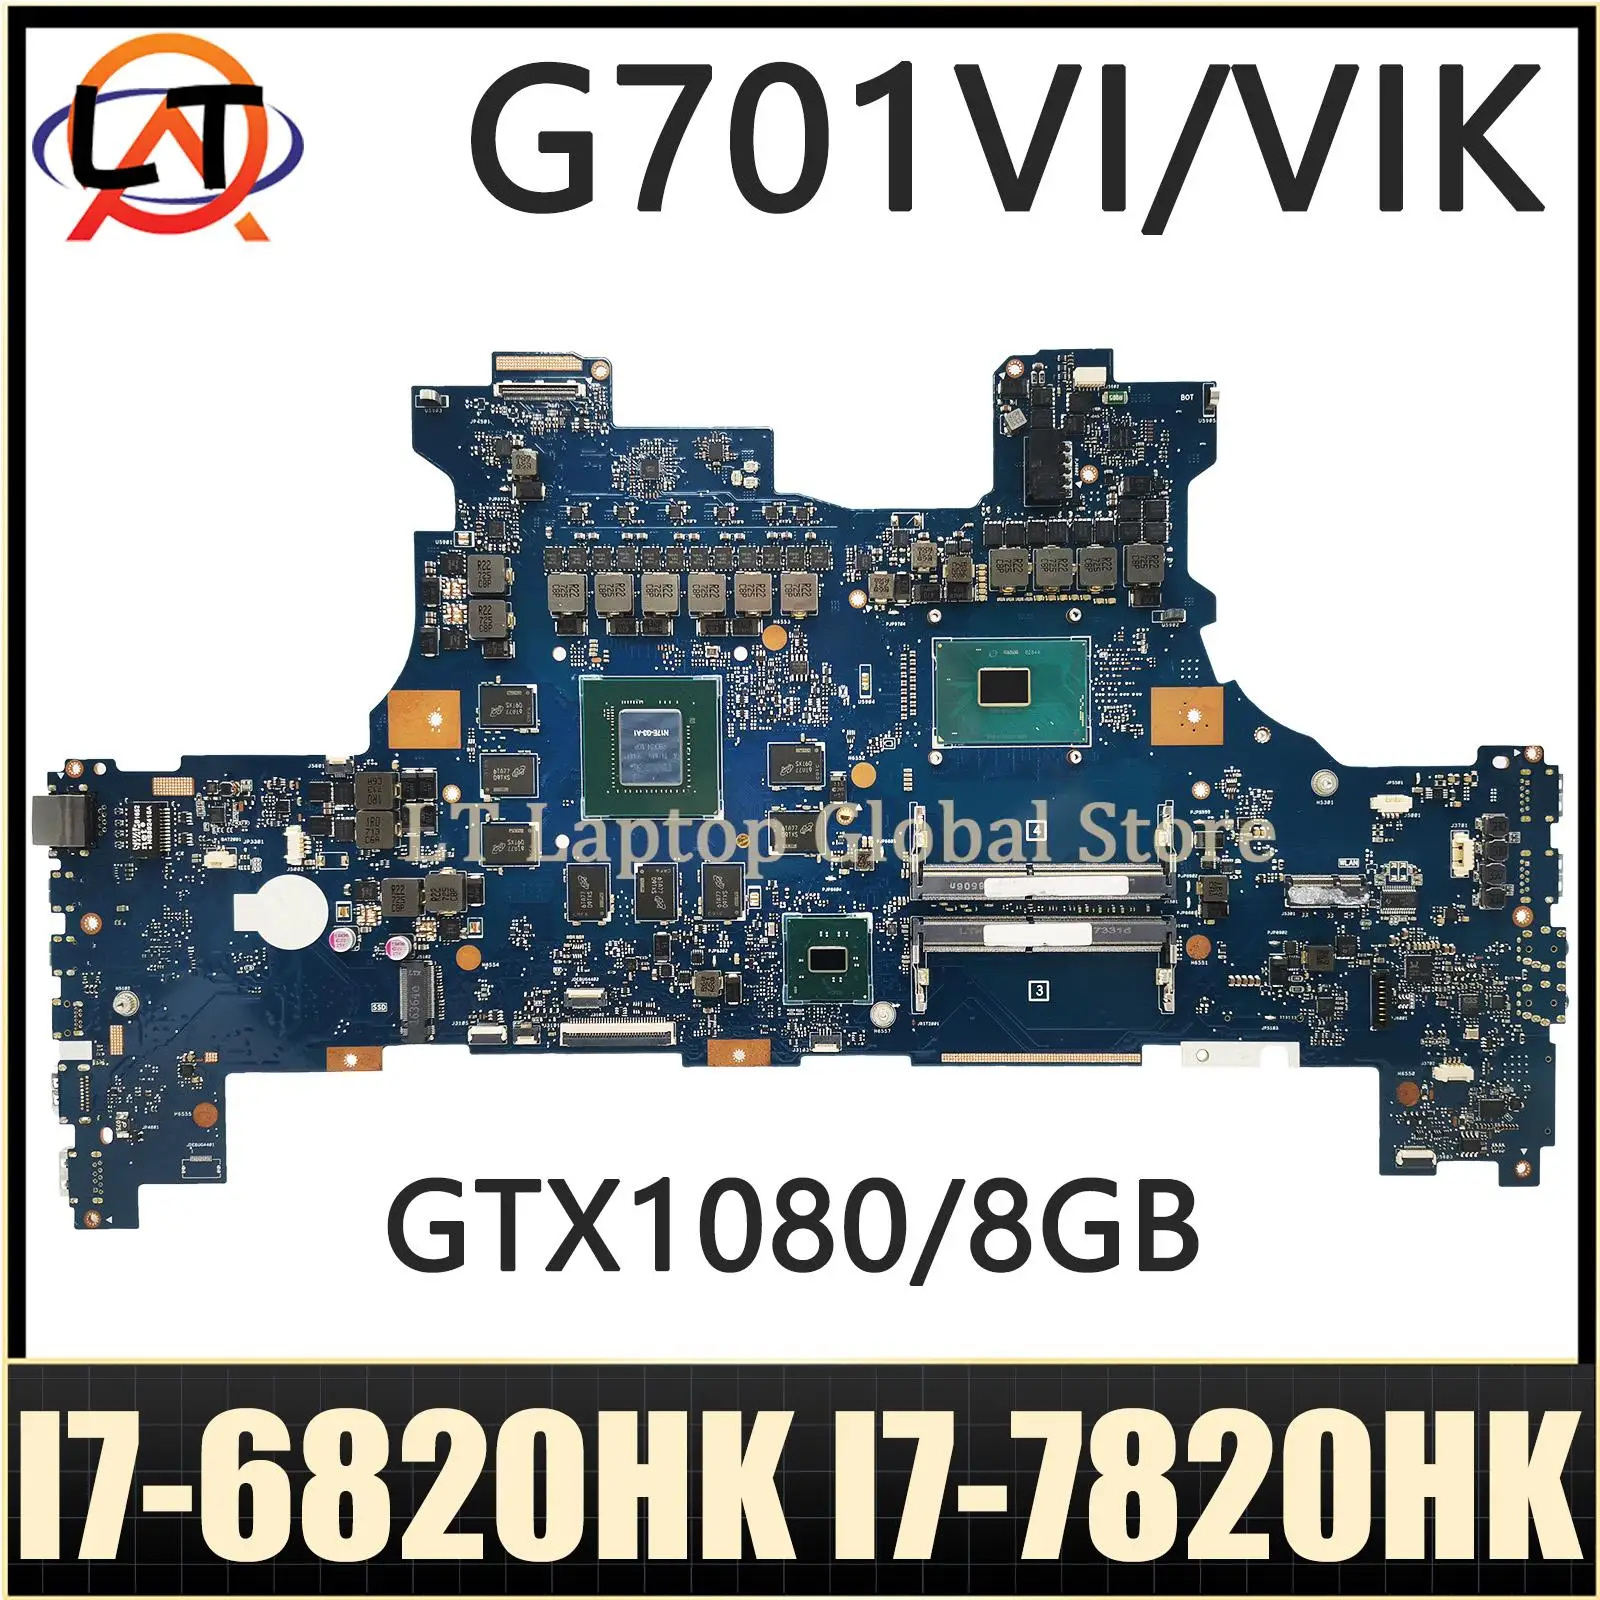 

G701V Notebook Mainboard For ASUS ROG G701 G701VI G701VIK Laptop Motherboard I7-6820HK I7-7820HK CPU GTX1080/8GB DDR4